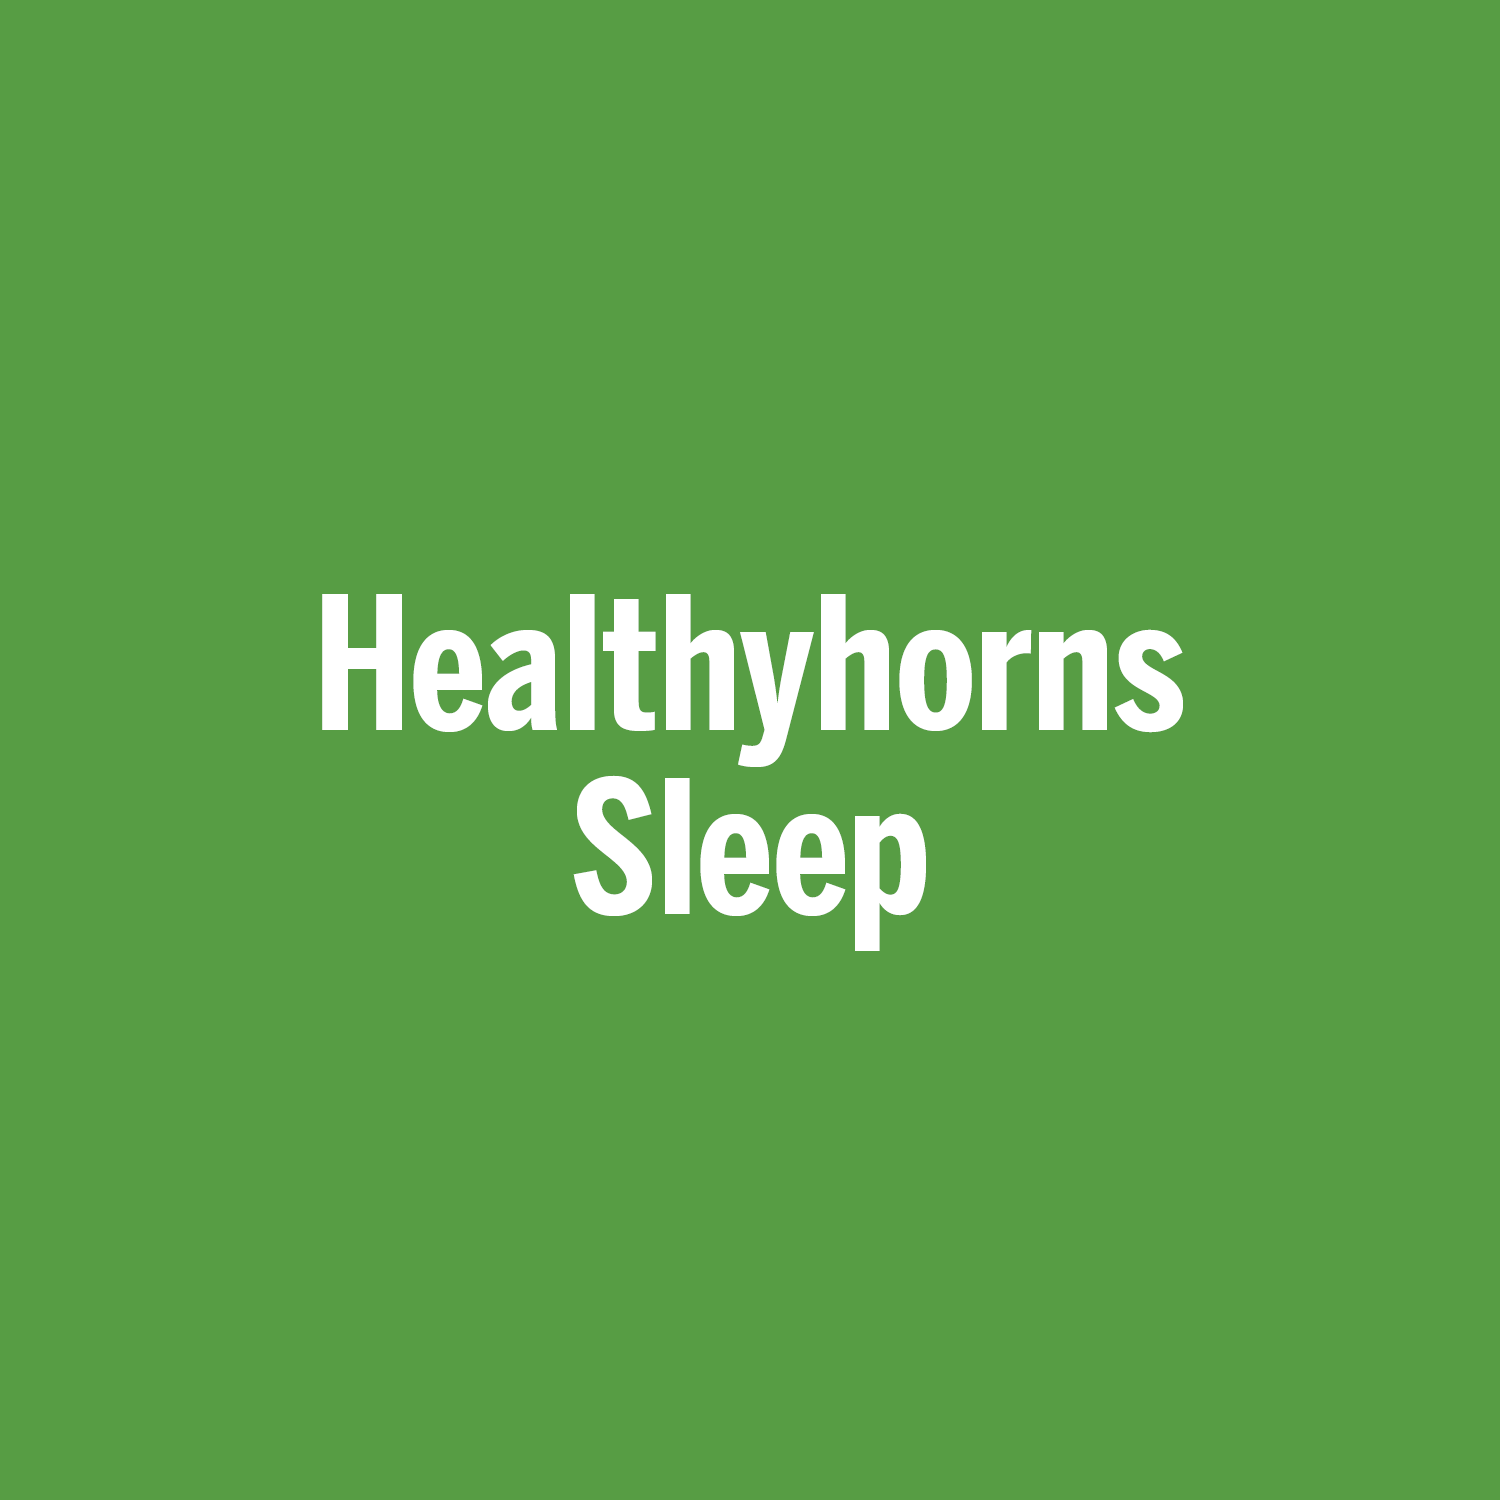 Healthyhorns Sleep